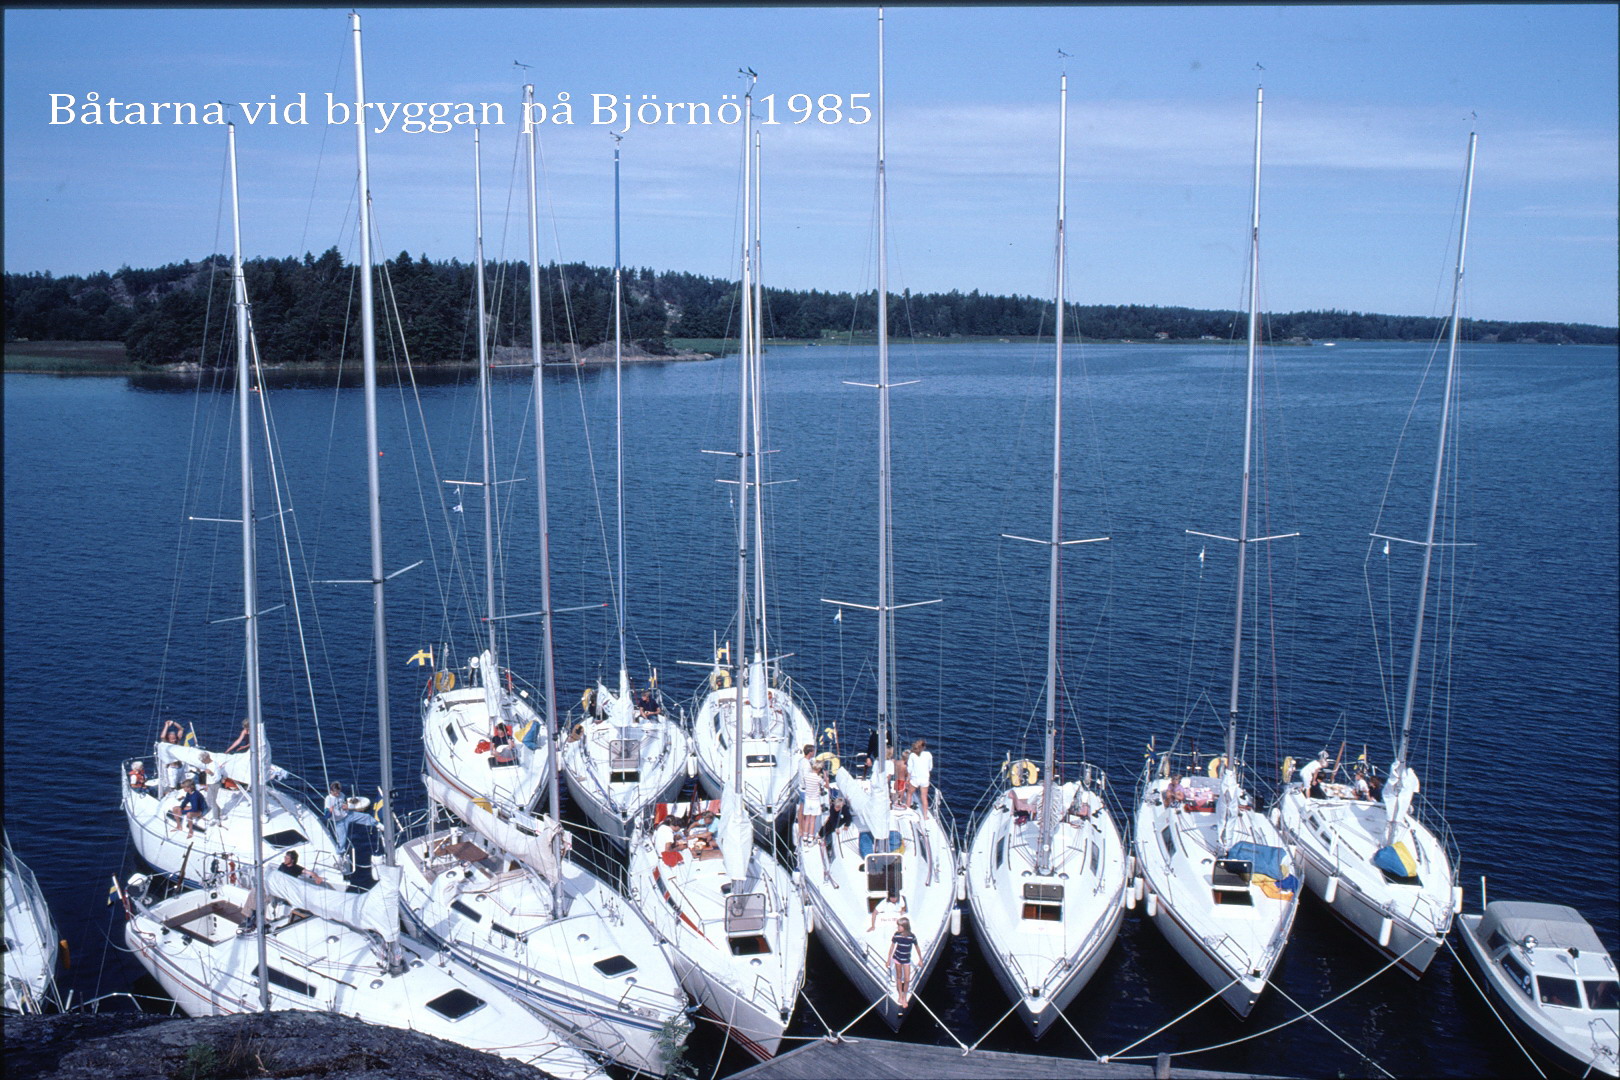 85-131 Båtarna vid bryggan på Björnö